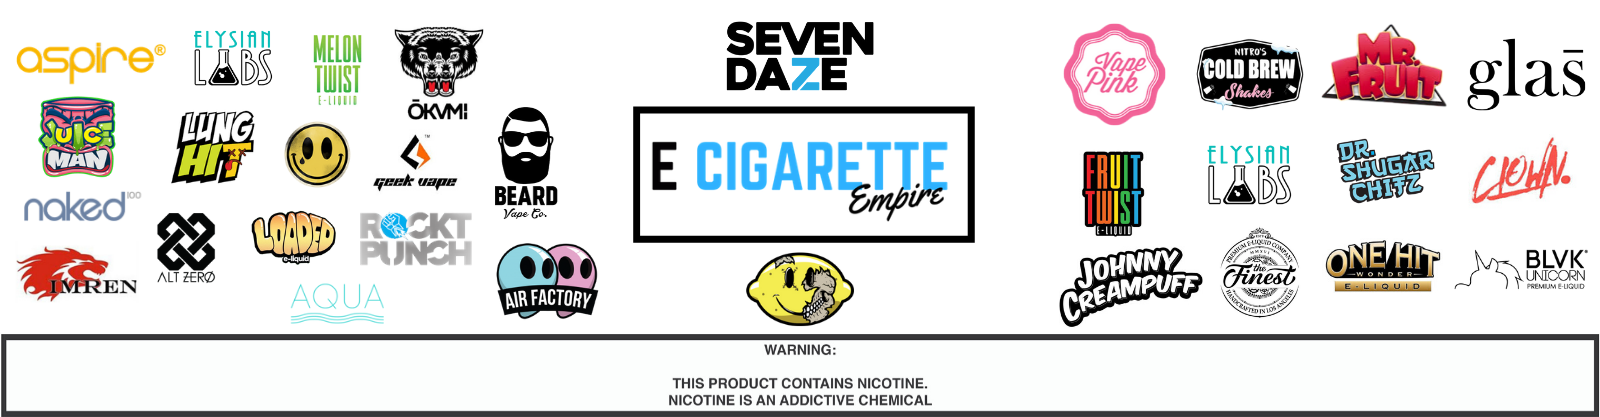 E Cigarette Empire Photo